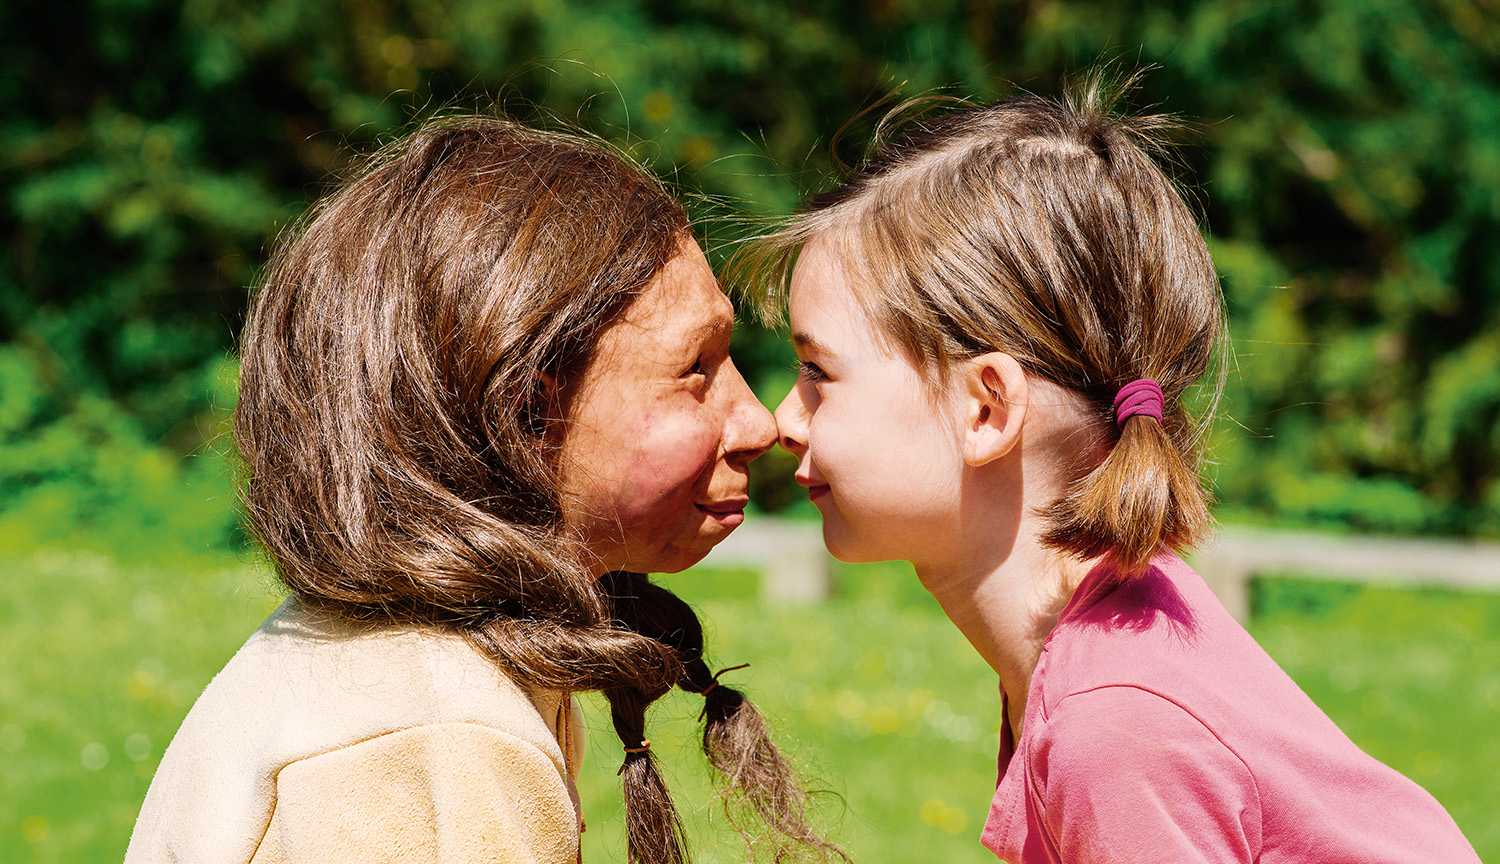 La imagen muestra a un neandertal y a una niña humana, cara a cara.